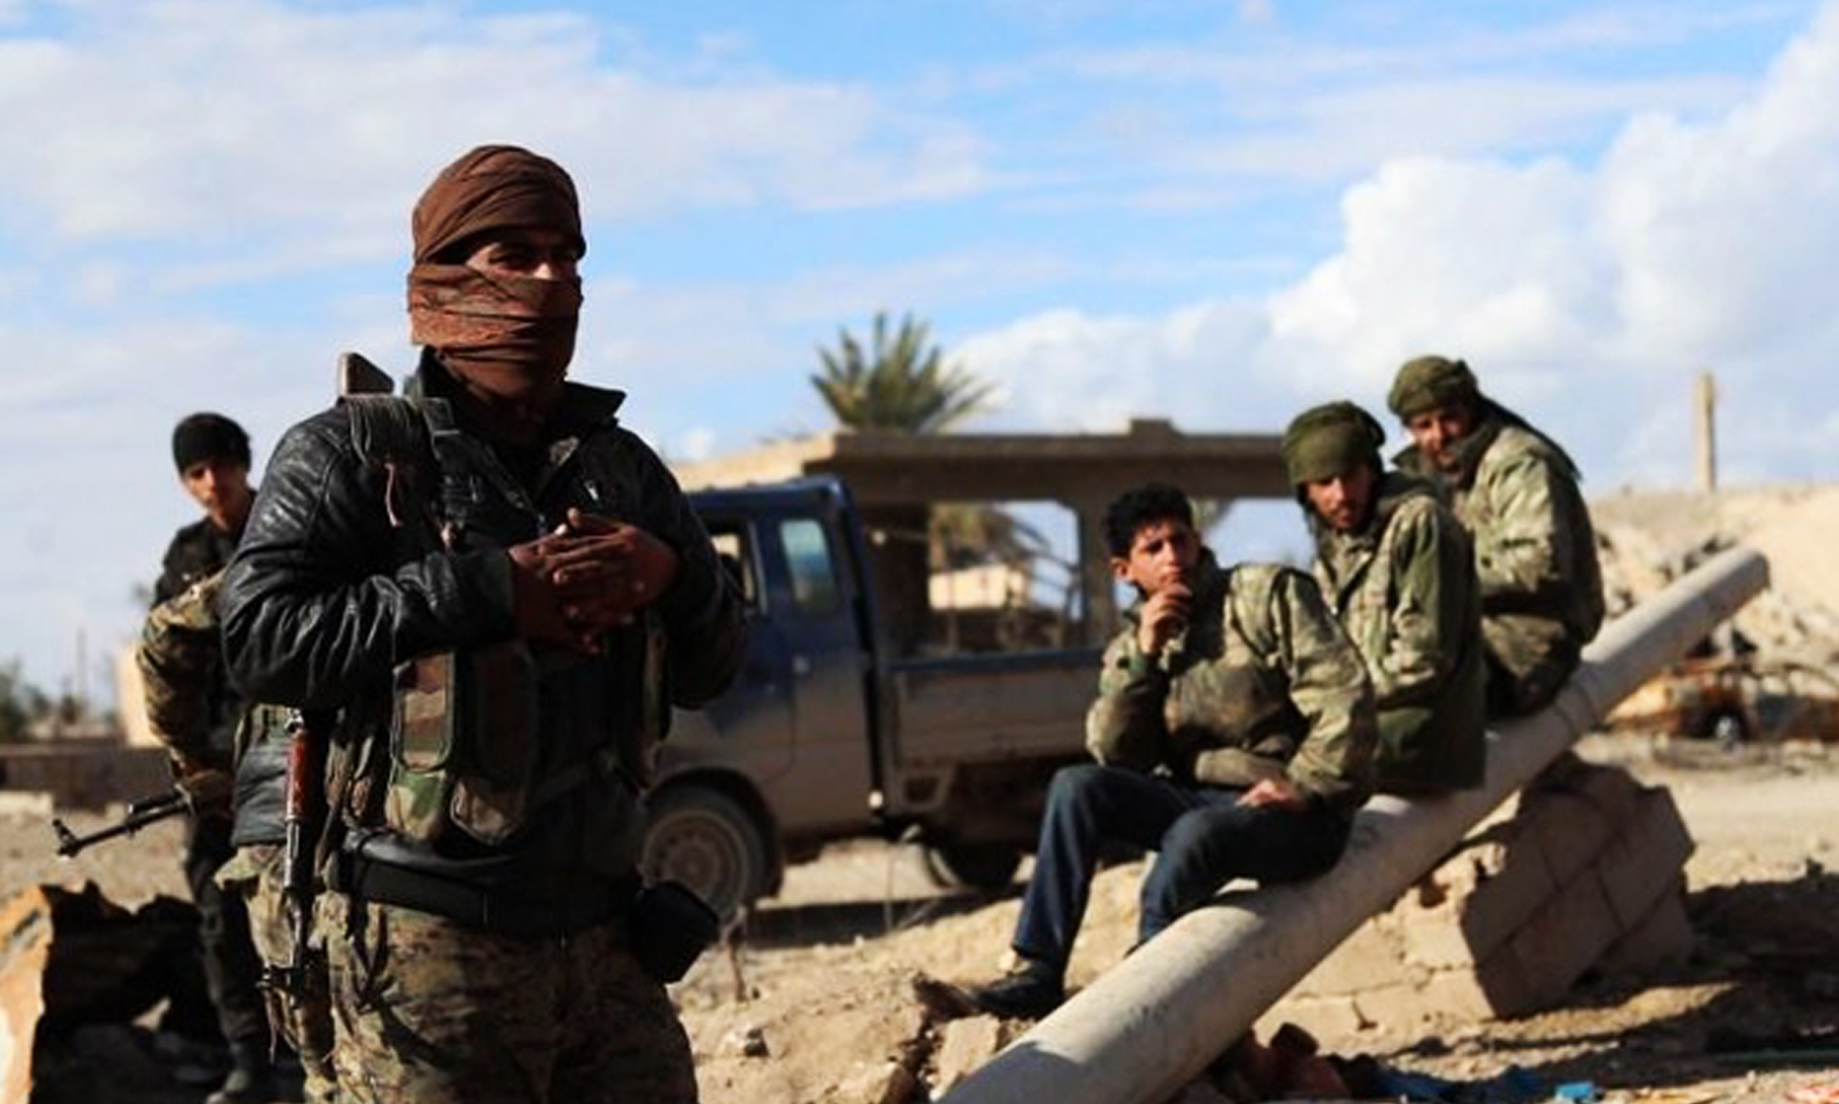 24 Daesh Militants Captured In Iraq, After Fleeing Syria